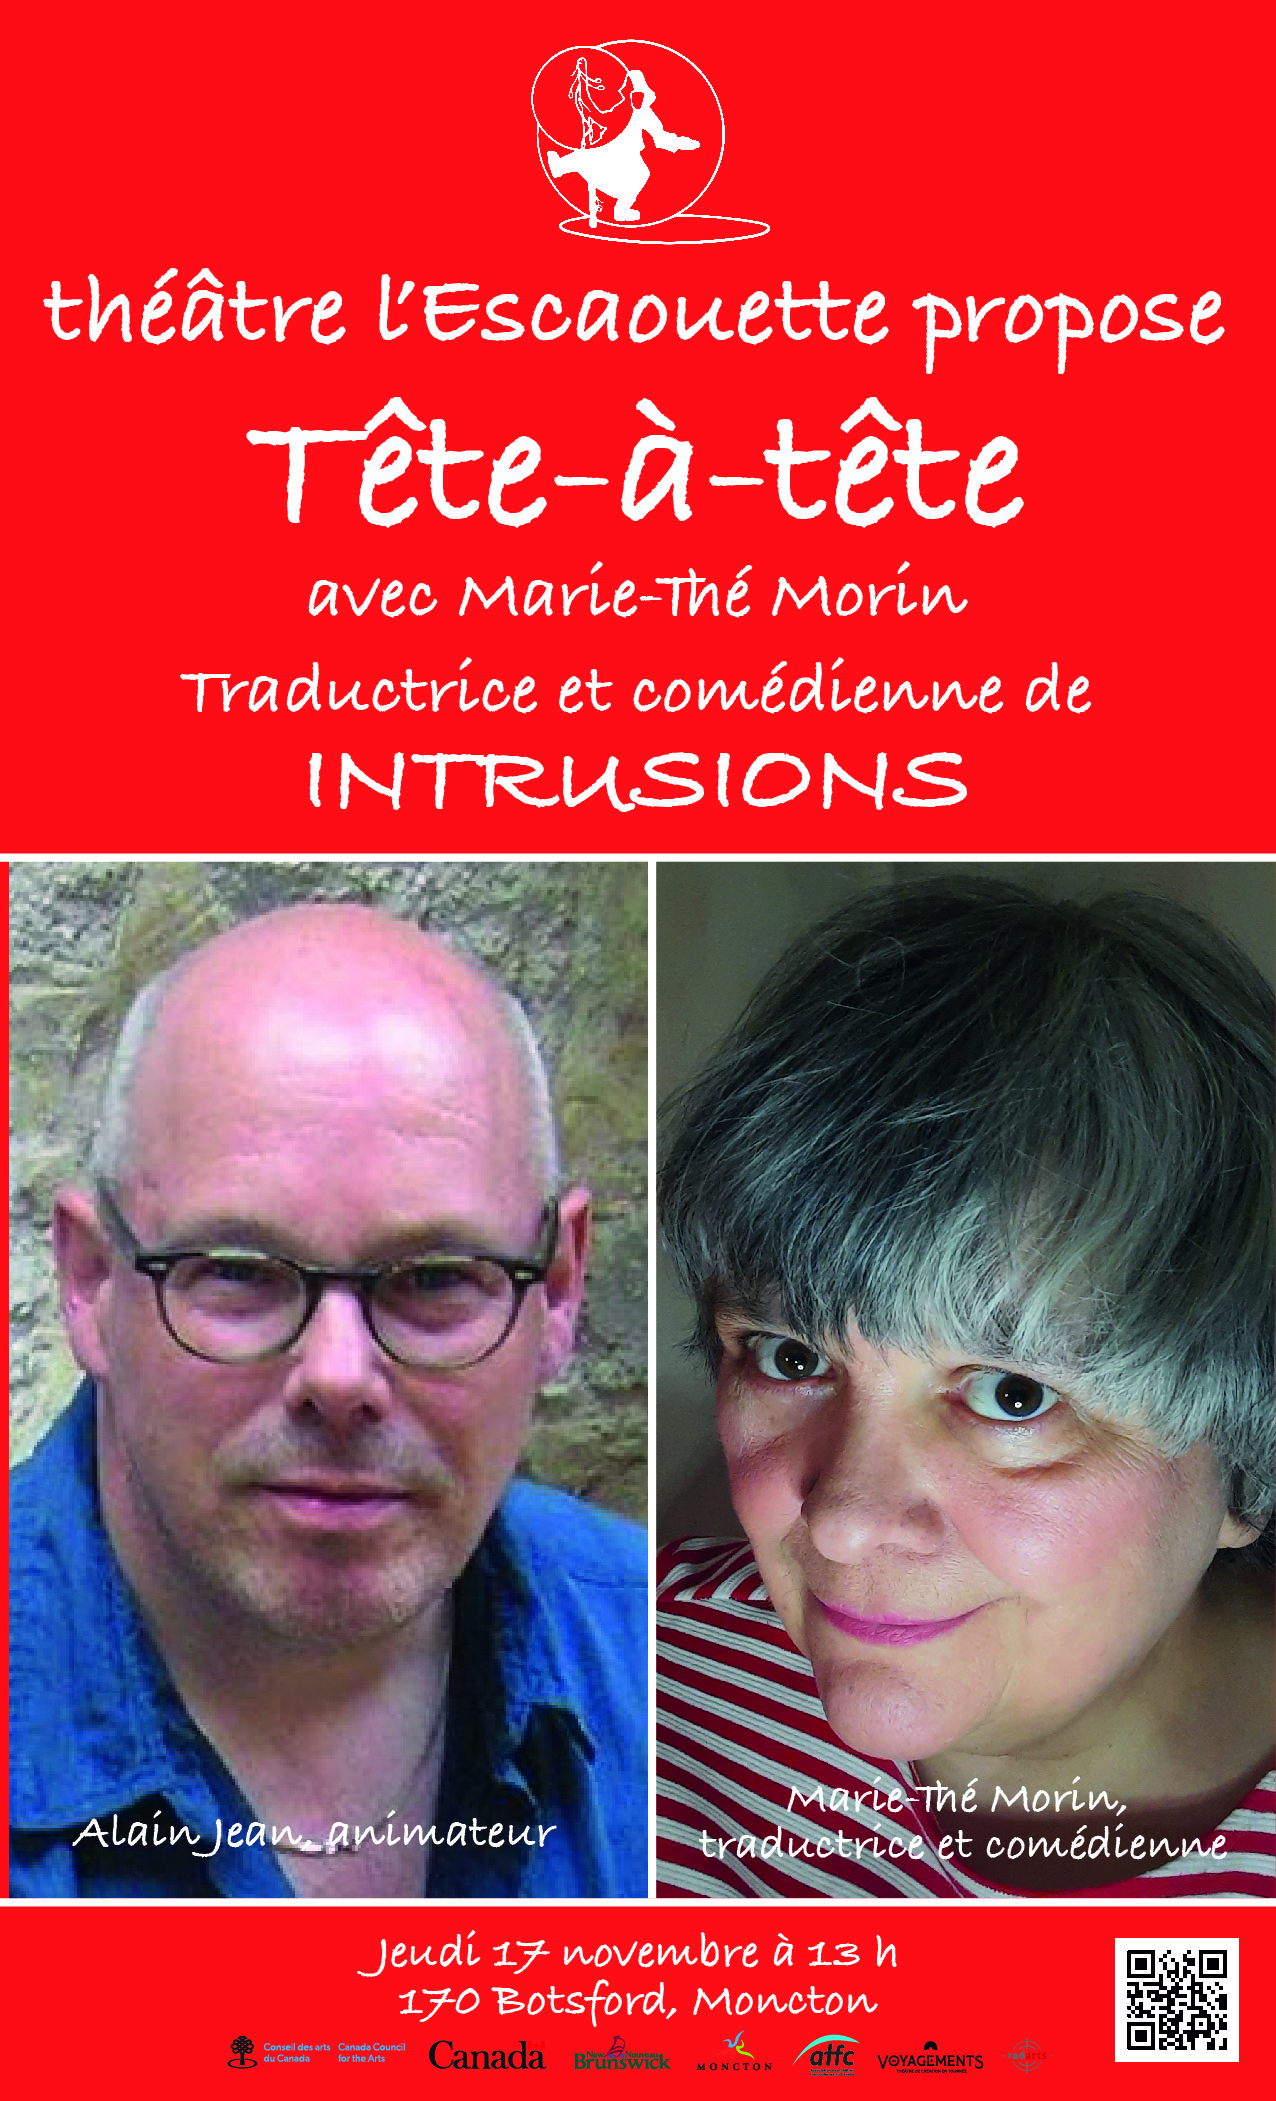 théâtre l’Escaouette propose Tête-à-tête avec Marie-Thé Morin Traductrice et comédienne de INTRUSIONS